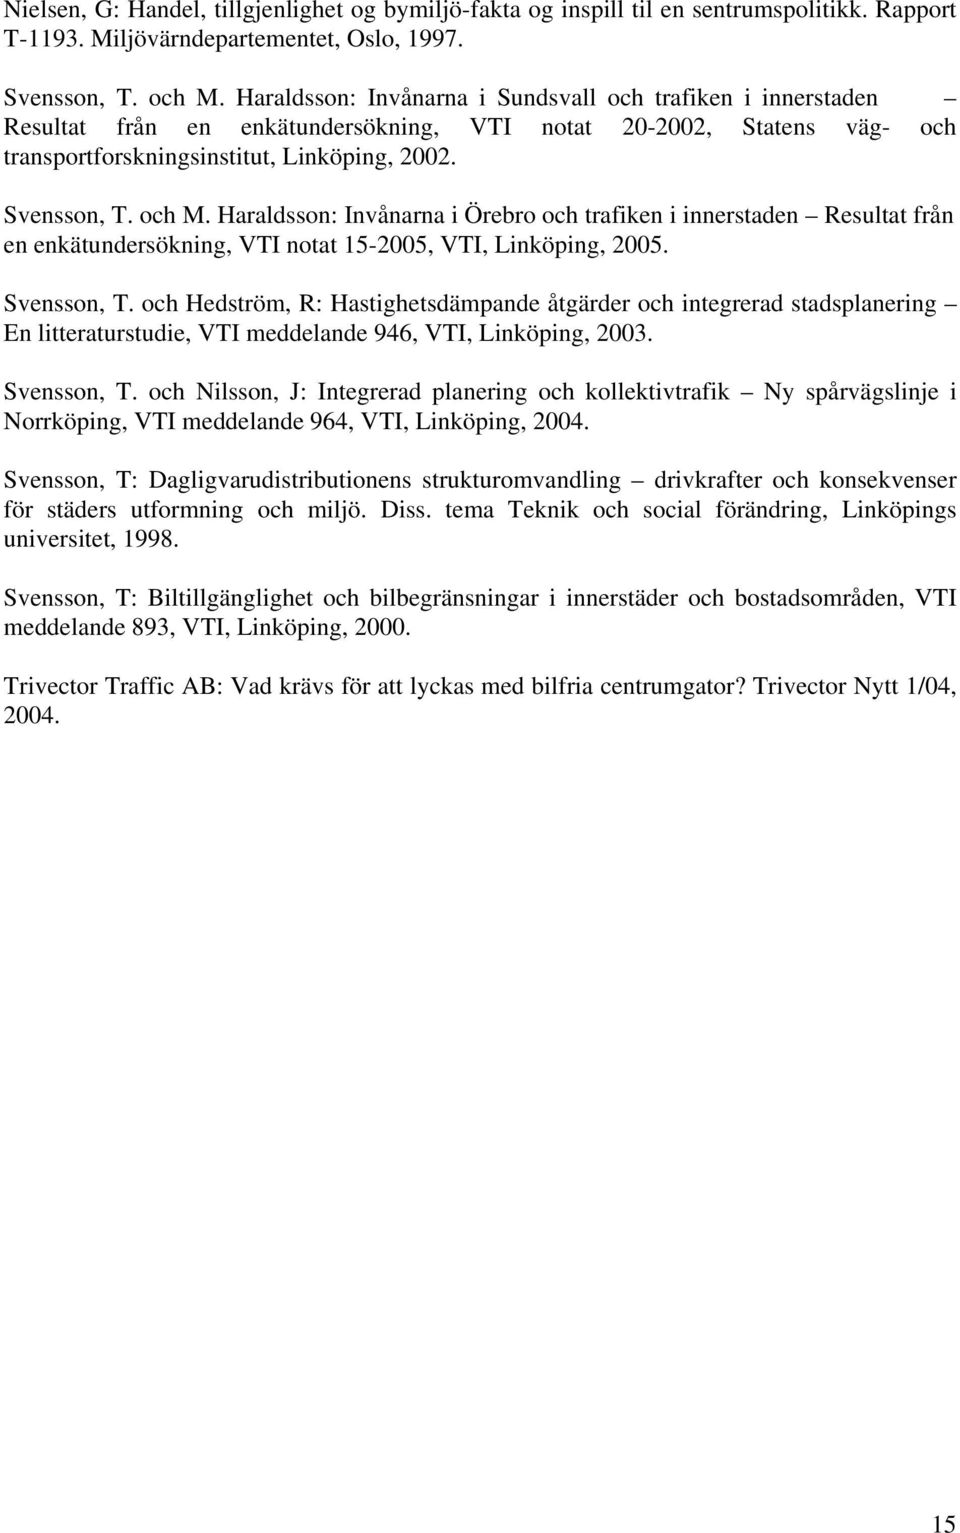 Haraldsson: Invånarna i Örebro och trafiken i innerstaden Resultat från en enkätundersökning, VTI notat 15-2005, VTI, Linköping, 2005. Svensson, T.